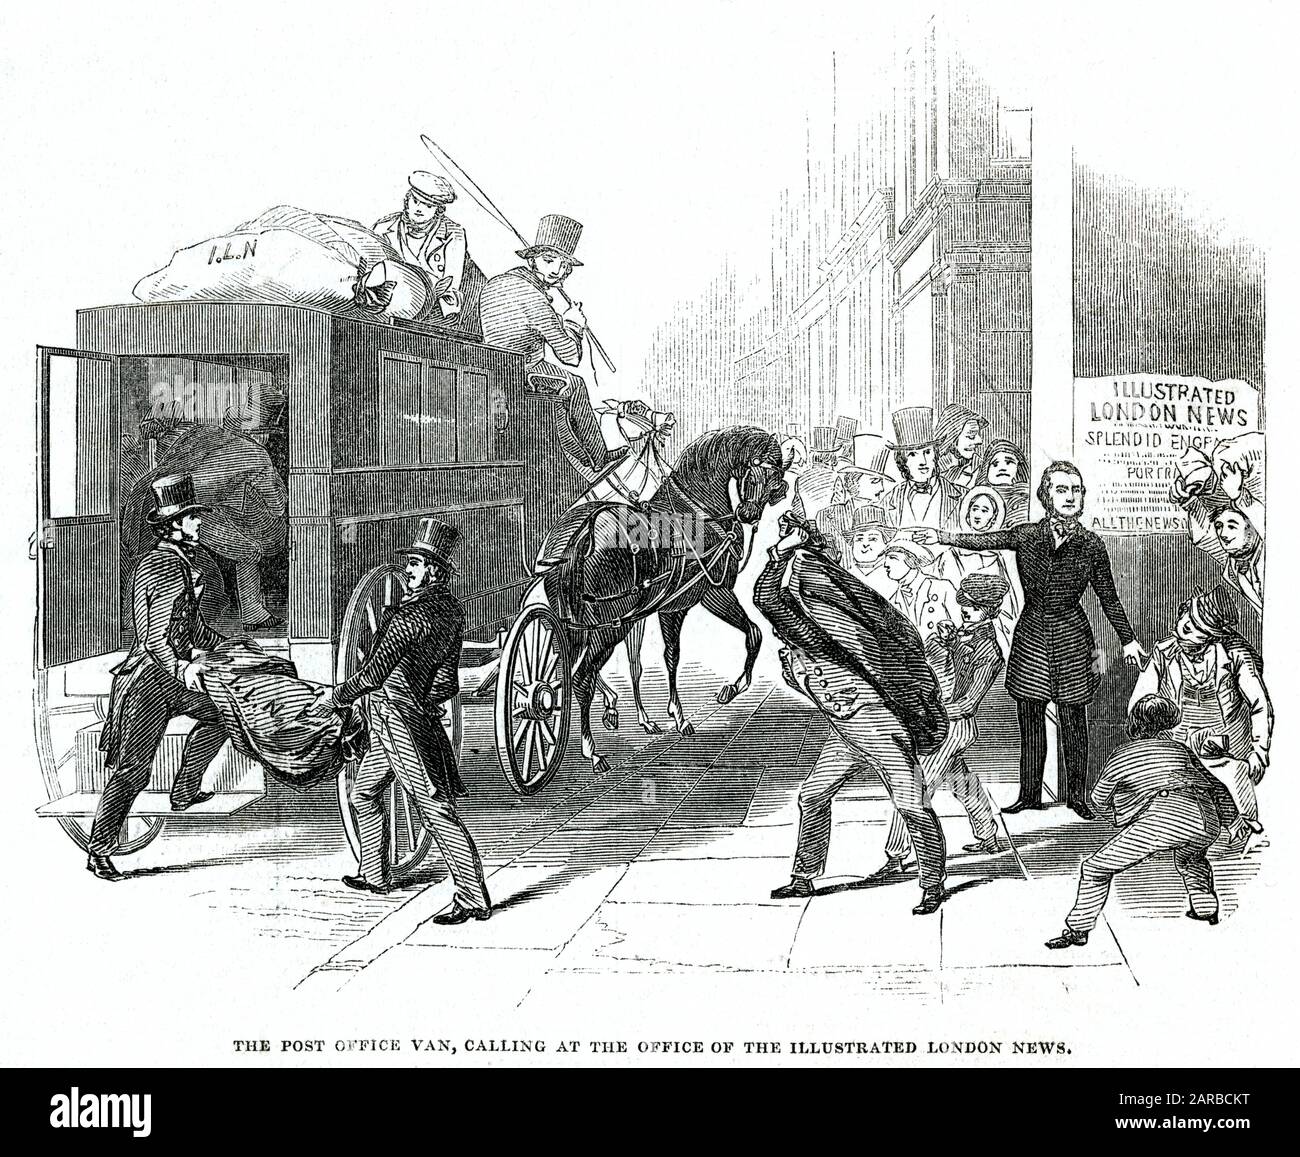 The Illustrated London News - bureau de poste van 1845 Banque D'Images